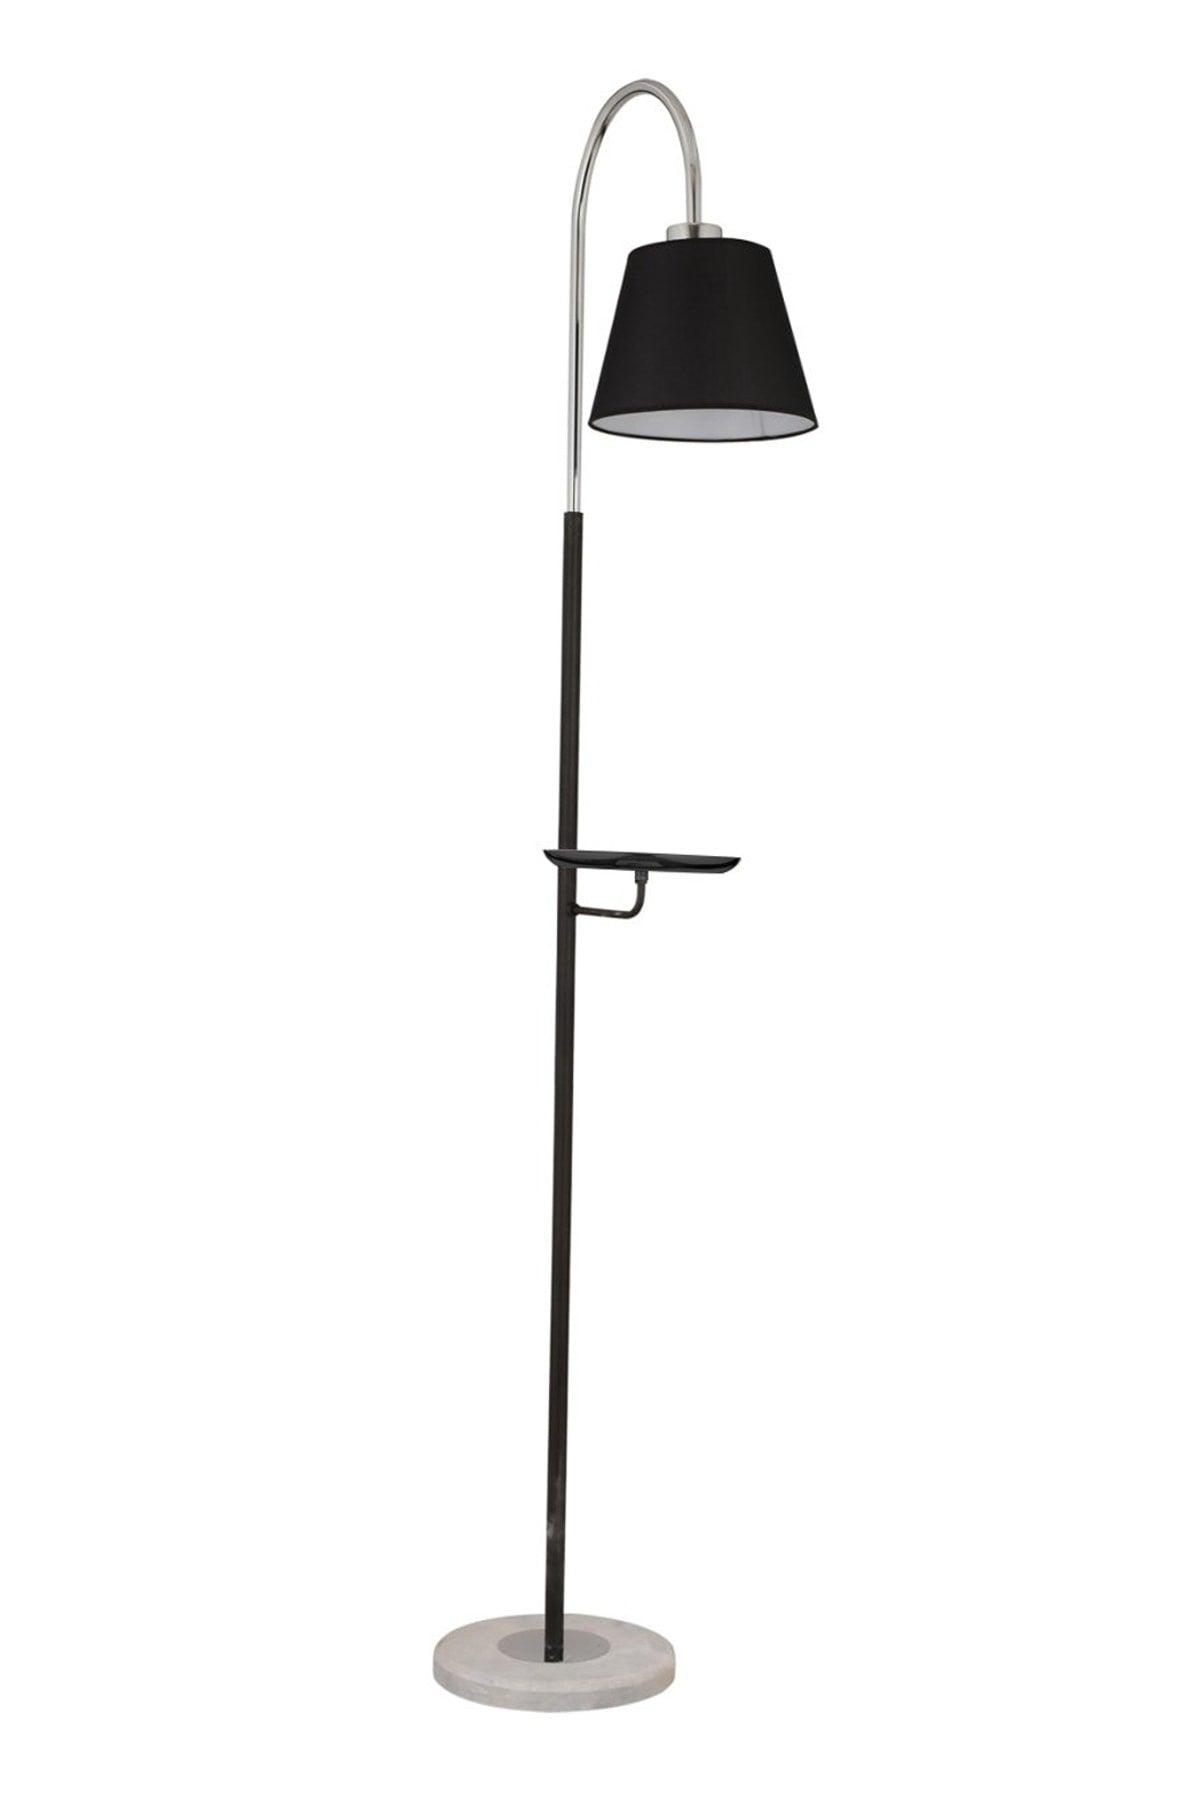 Lumina Black Cap Chrome Modern Design Floor Lampshade Lamp Metal Floor Lamp - Swordslife